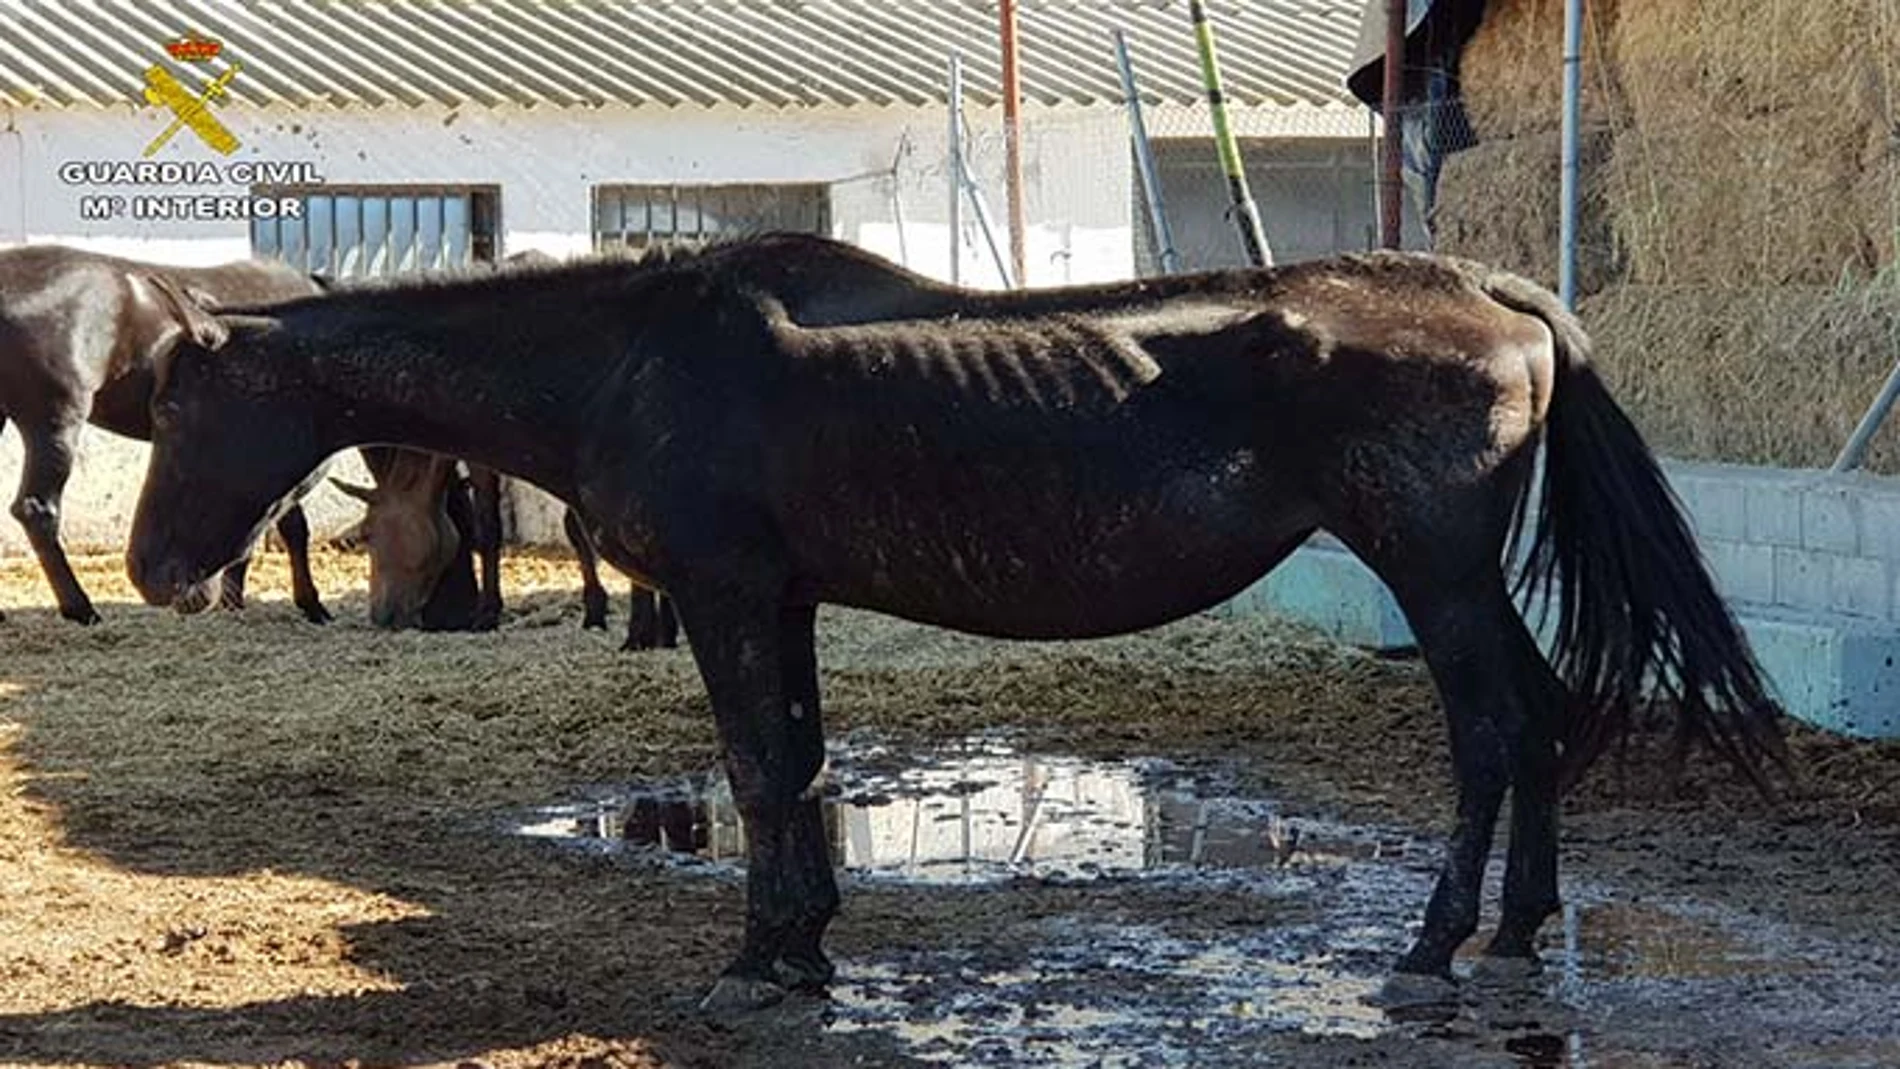 Uno de los caballos encontrados con graves deficiencias de nutrición